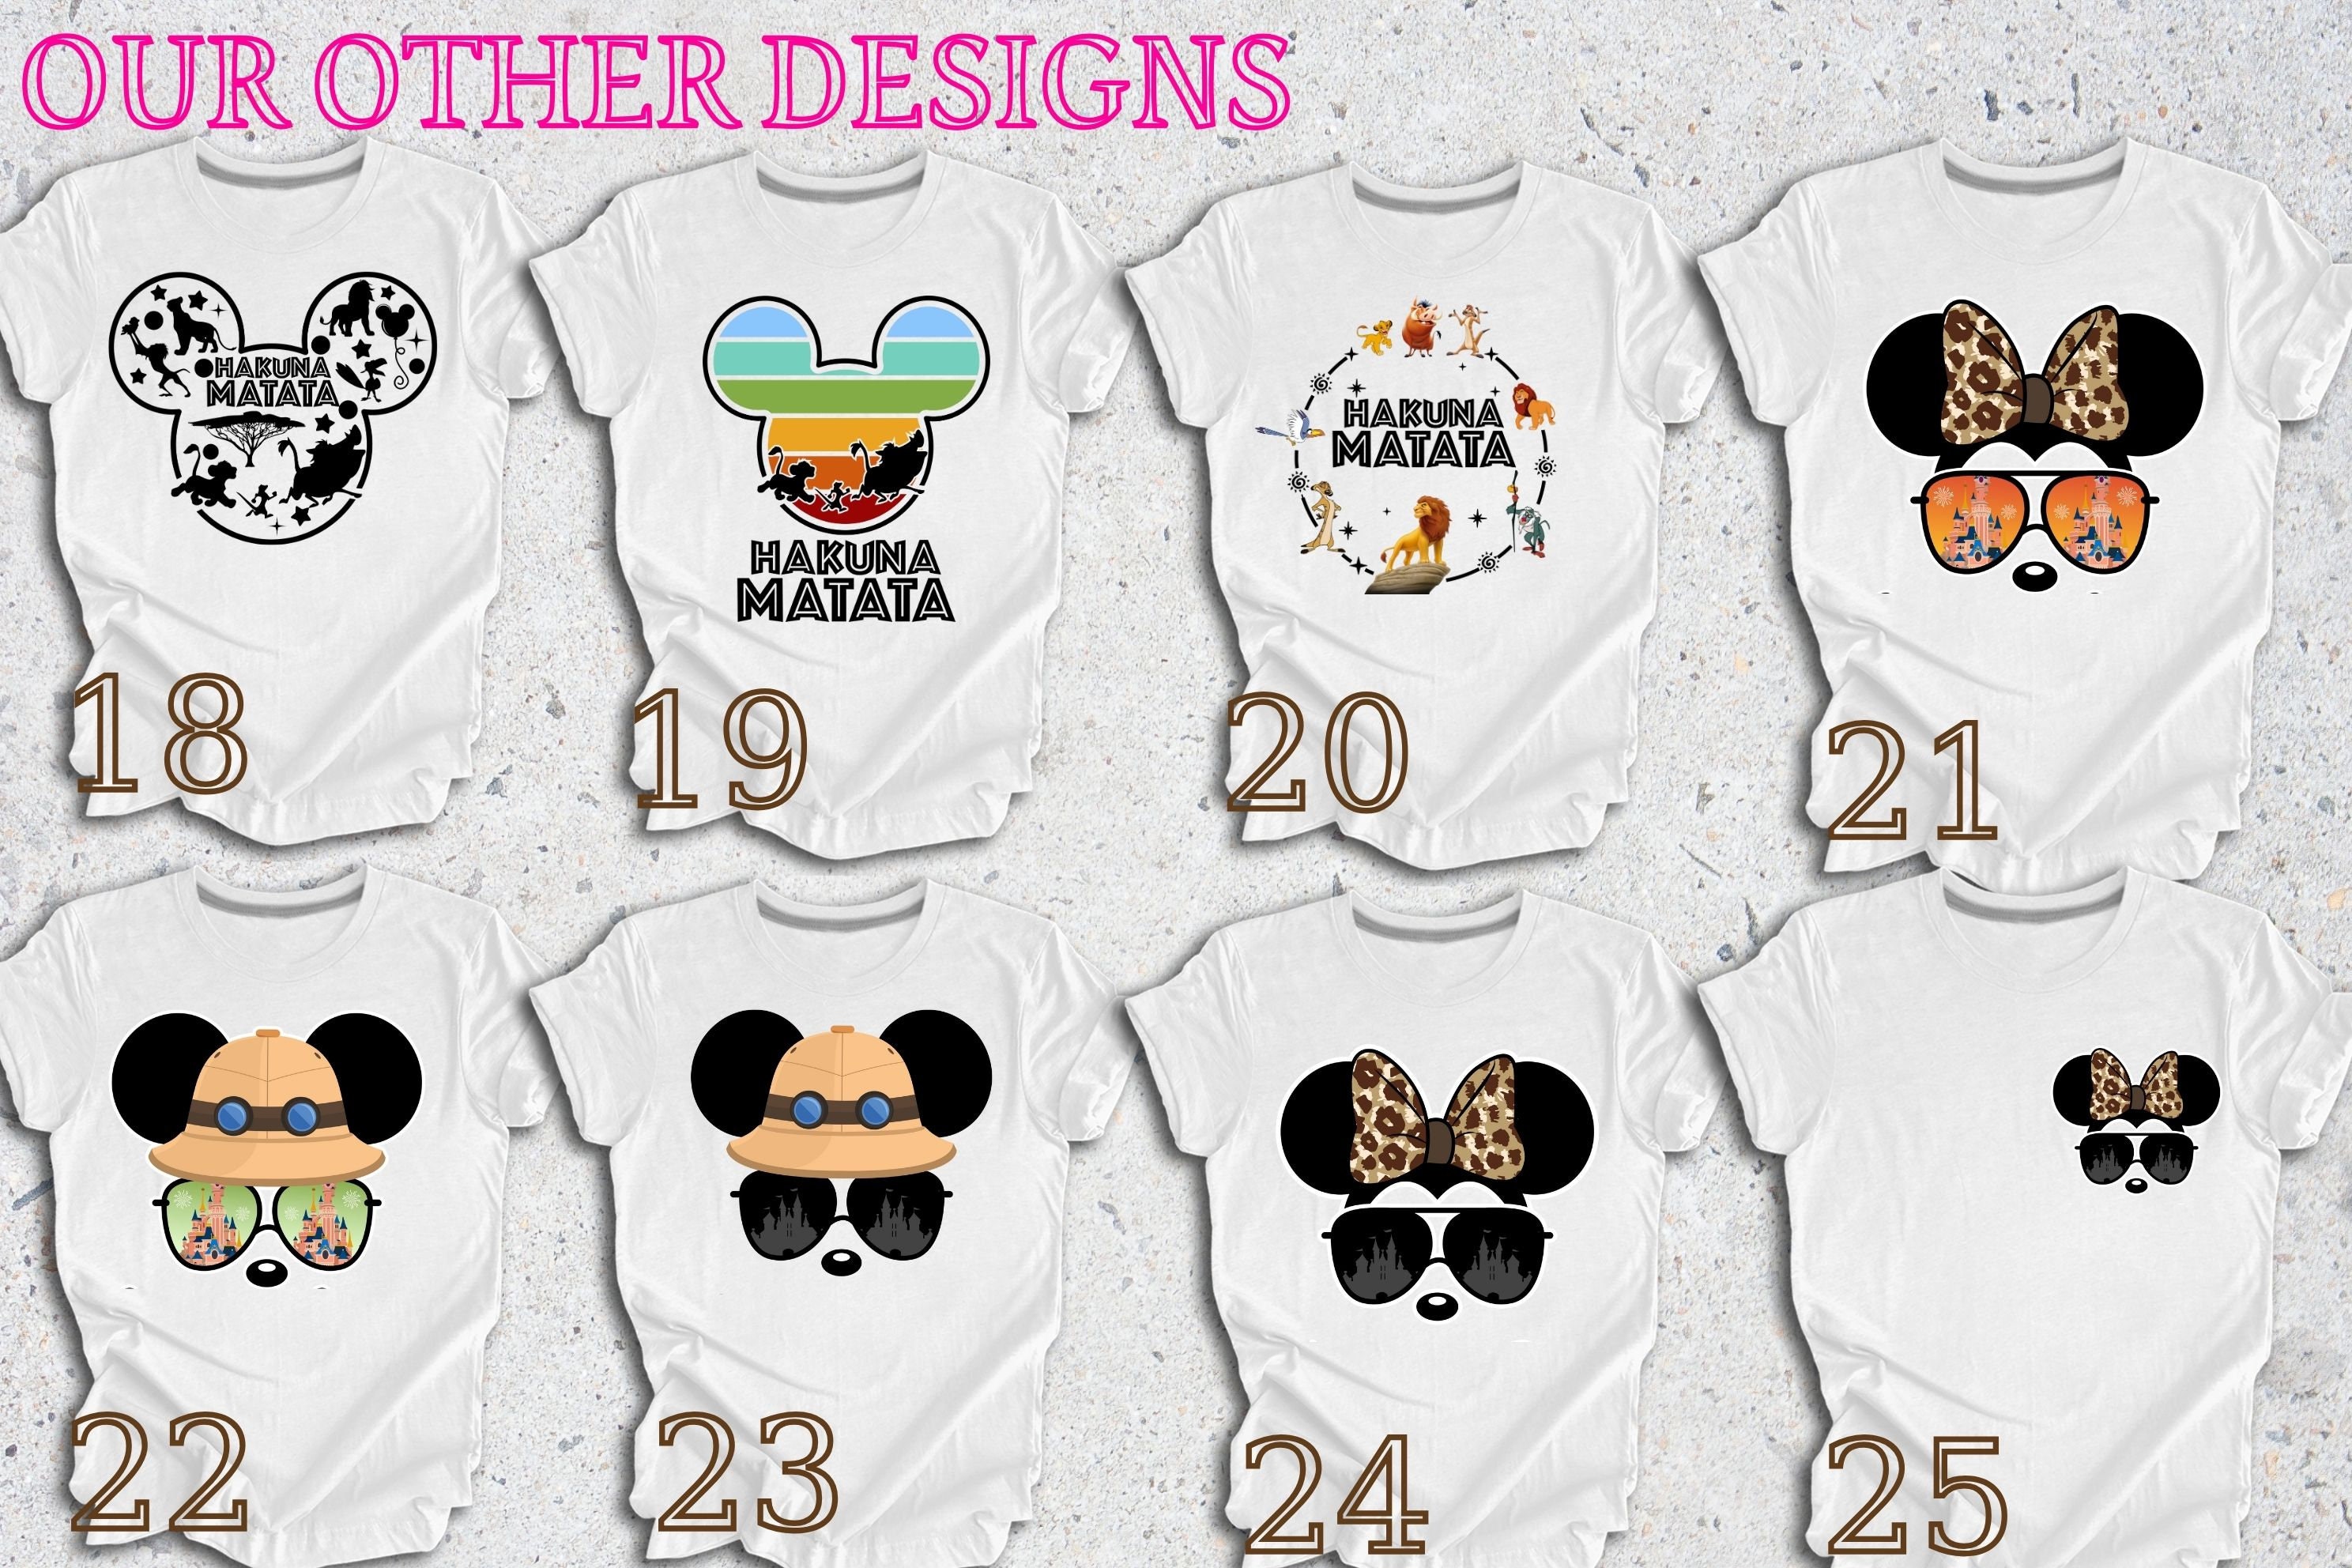 Discover Custom Animal Kingdom Safari Shirt, Disney Trip Safari Shirt, Disney Family Vacation